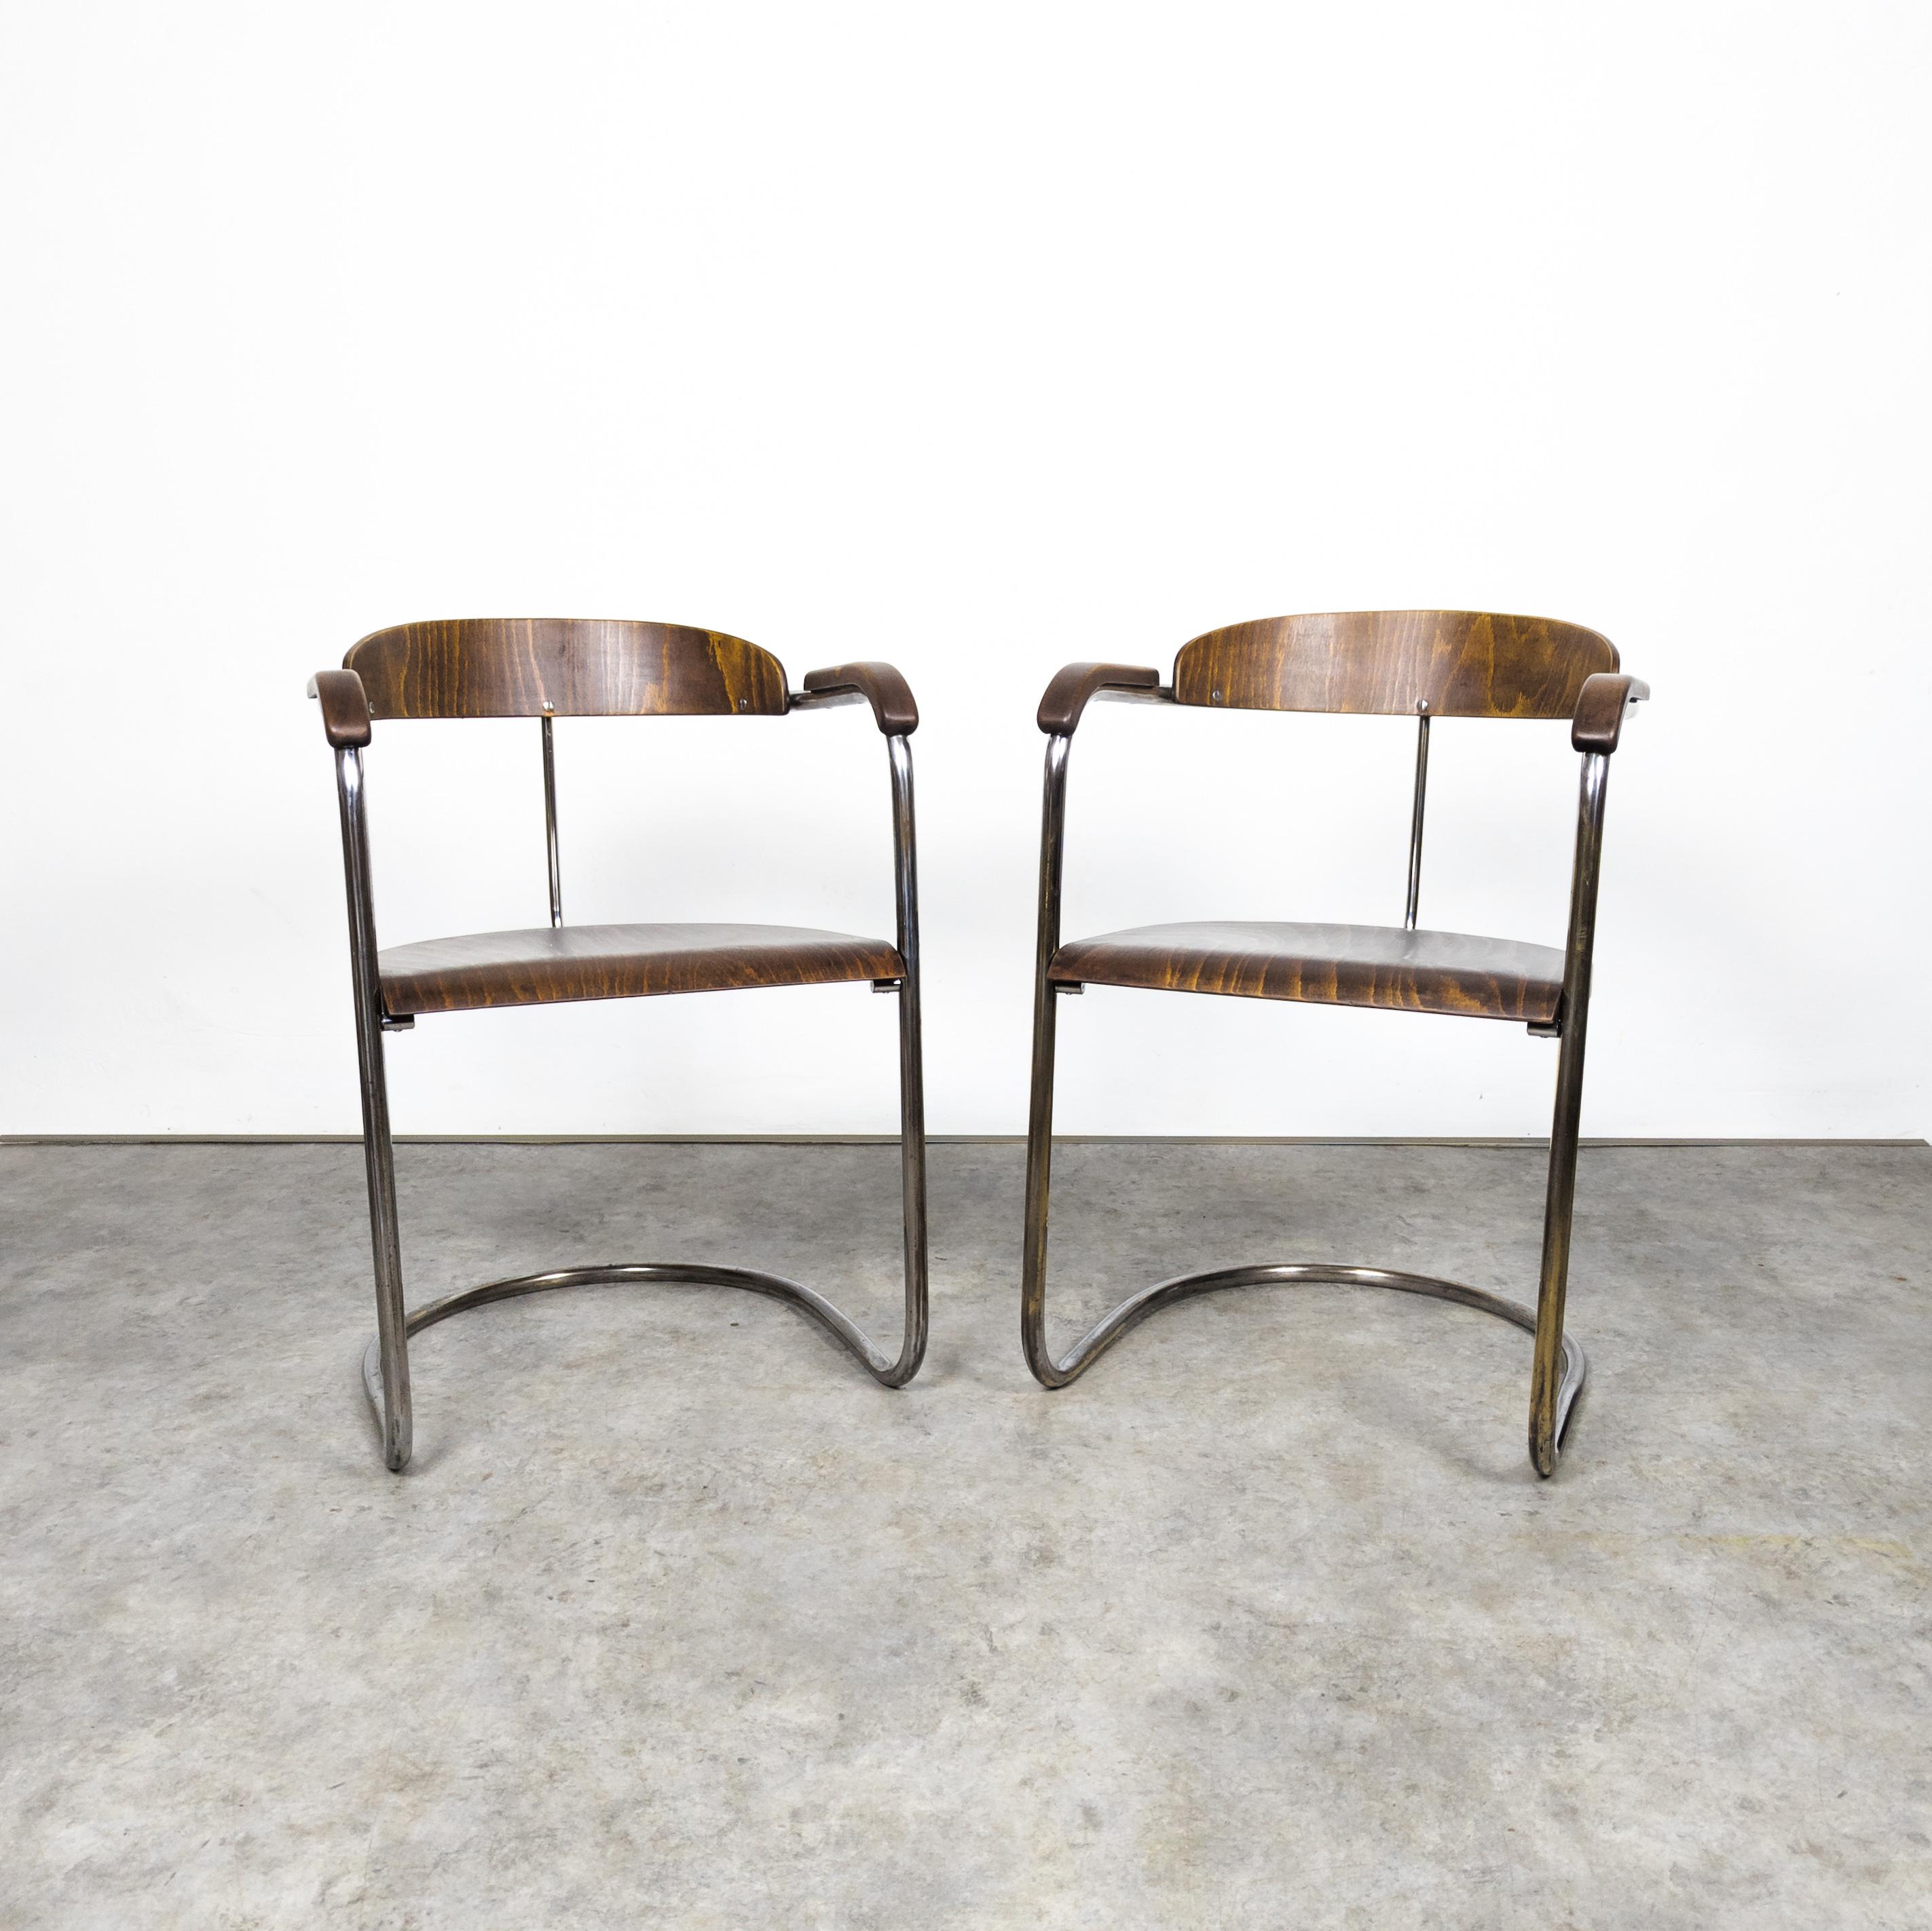 Rare variante des fauteuils SS 33, conçus par Hans & Wassily Luckhardt en 1935 à l'origine pour Desta. Ces exemplaires ont été fabriqués par Gottwald, dans l'ancienne Tchécoslovaquie, dans les années 1930. Produites sous le numéro de catalogue EKS